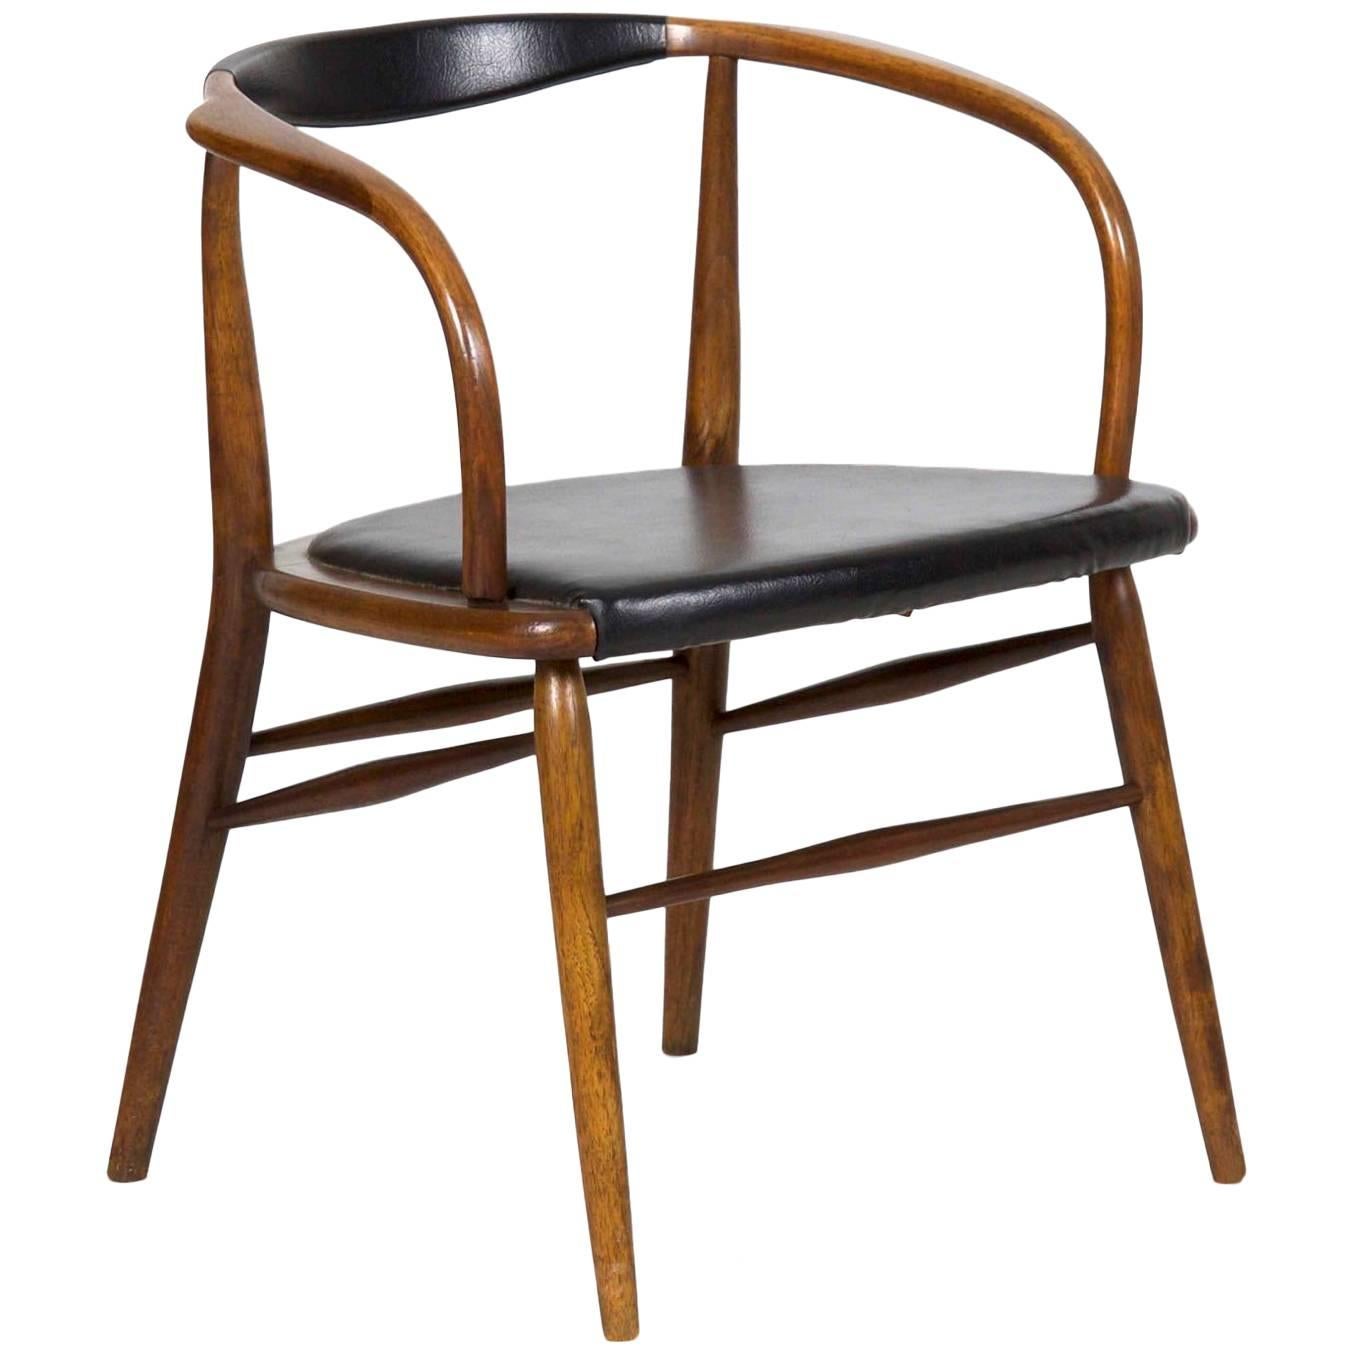 Fauteuil en bois courbé Boling Chair Co.:: circa 1958